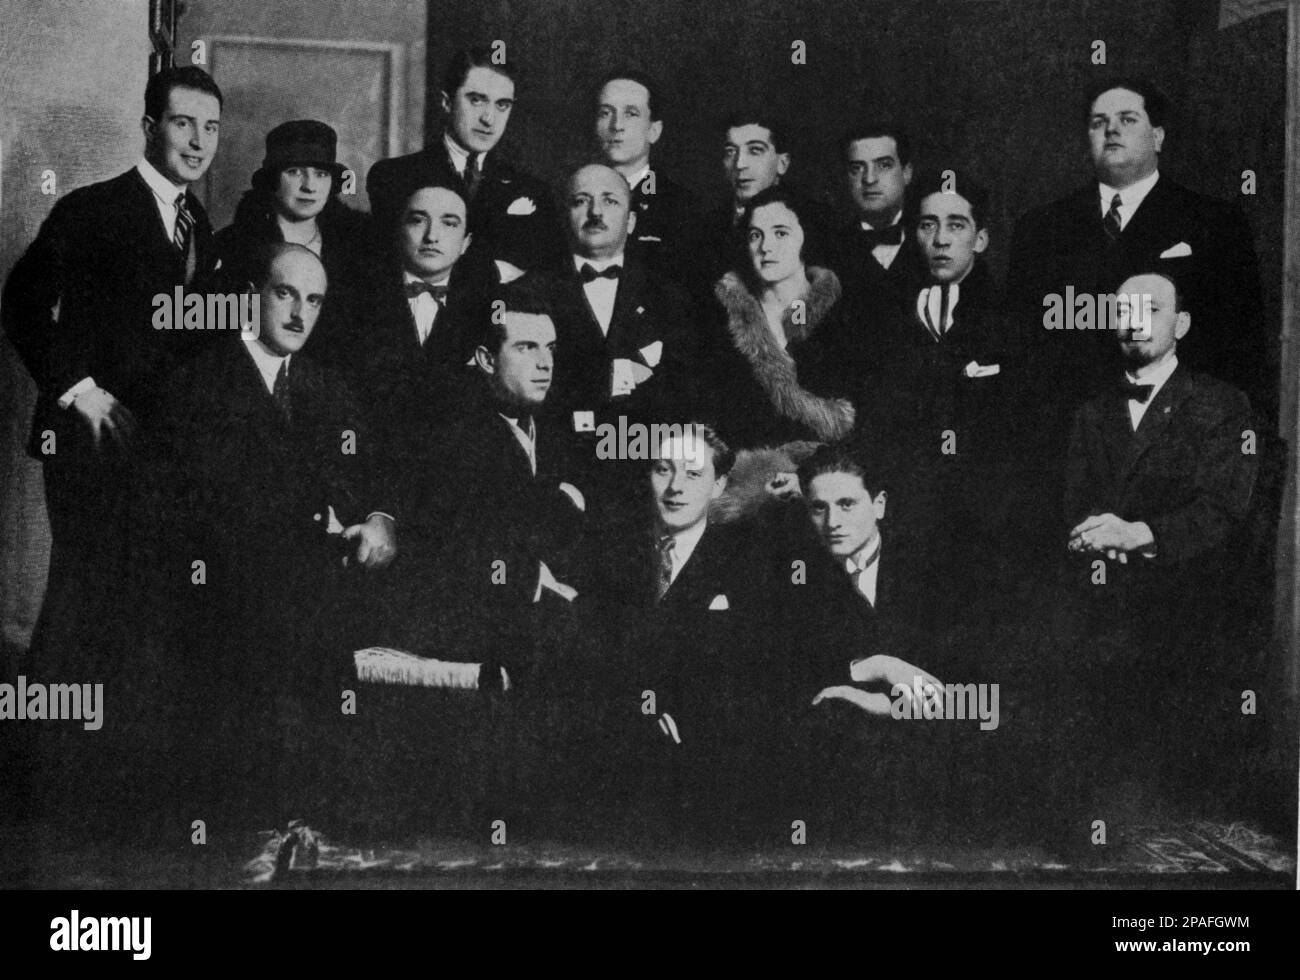 The photo of italians artist group of FUTURISTI pubblished in the italian Avantgarde theatre magazine TEATRO , march - april 1927 : (from left) Fedele AZARI , Franco CASAVOLA , D' ANGELI , ARMANDO MAZZA ,Federico B.  PINNA , FORTUNATO DEPERO ,  FILIPPO TOMMASO MARINETTI ( 1876 - 1944 ), BENEDETTA MARINETTI , Mino SOMENZI ,Guglielmo  JANNELLI , ENRICO PRAMPOLINI , Luigi RUSSOLO and ESCODAME' . Photo by Caminada , Milano  - FUTURISM - FUTURISTA - FUTURIST - STORIA DELL' ARTE  - ARTS - MUSICA - MUSIC - amici - friends  - THEATER - AVANGUARDIA  - portrait - ritratto - baffi - moustache - cravatta Stock Photo